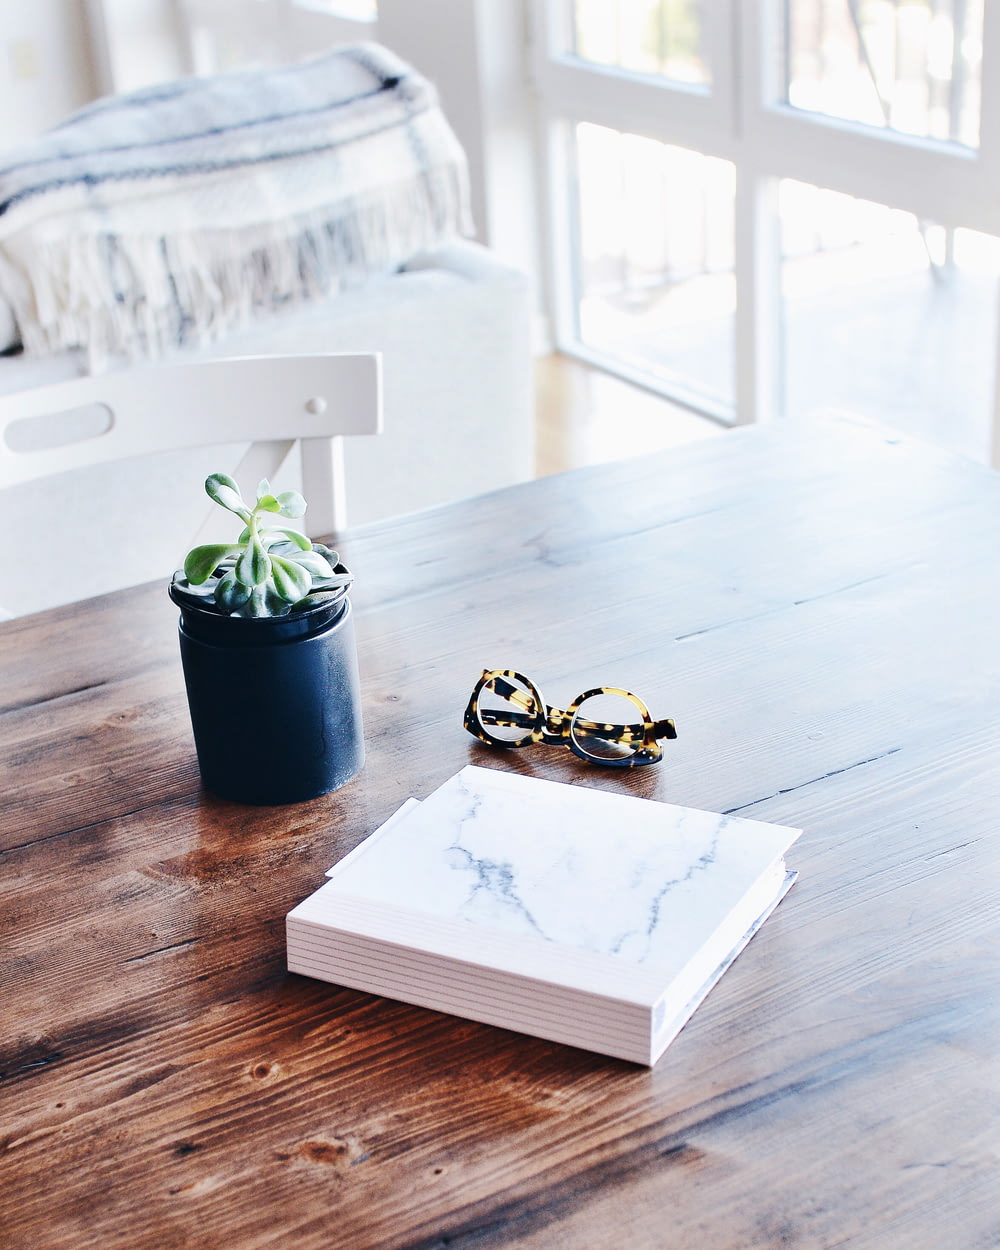 Livre relié à côté de lunettes et d’une plante succulente sur la table à l’intérieur de la pièce